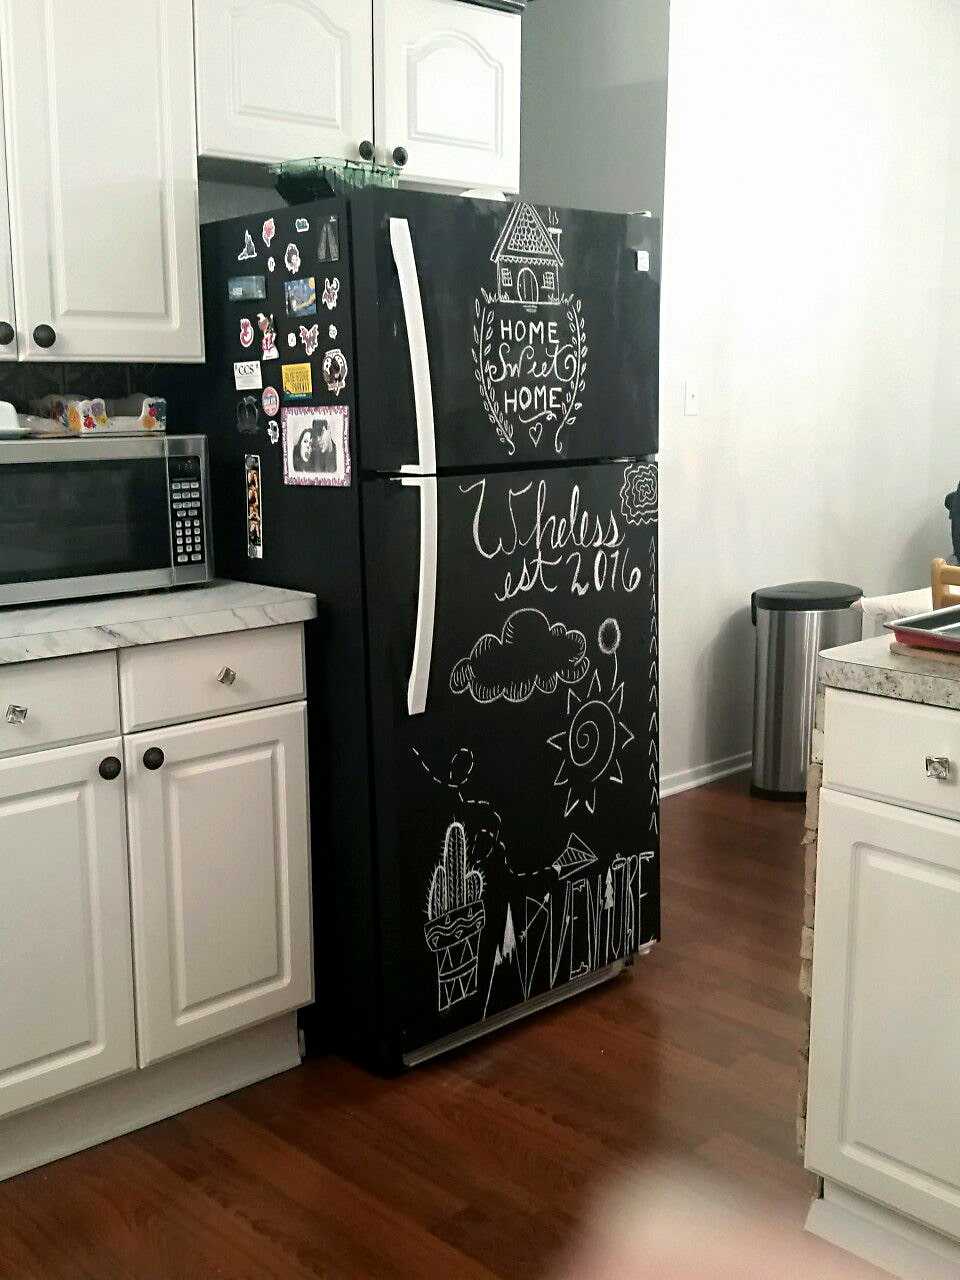 16 замечательных идей, которые помогут преобразить старый холодильник